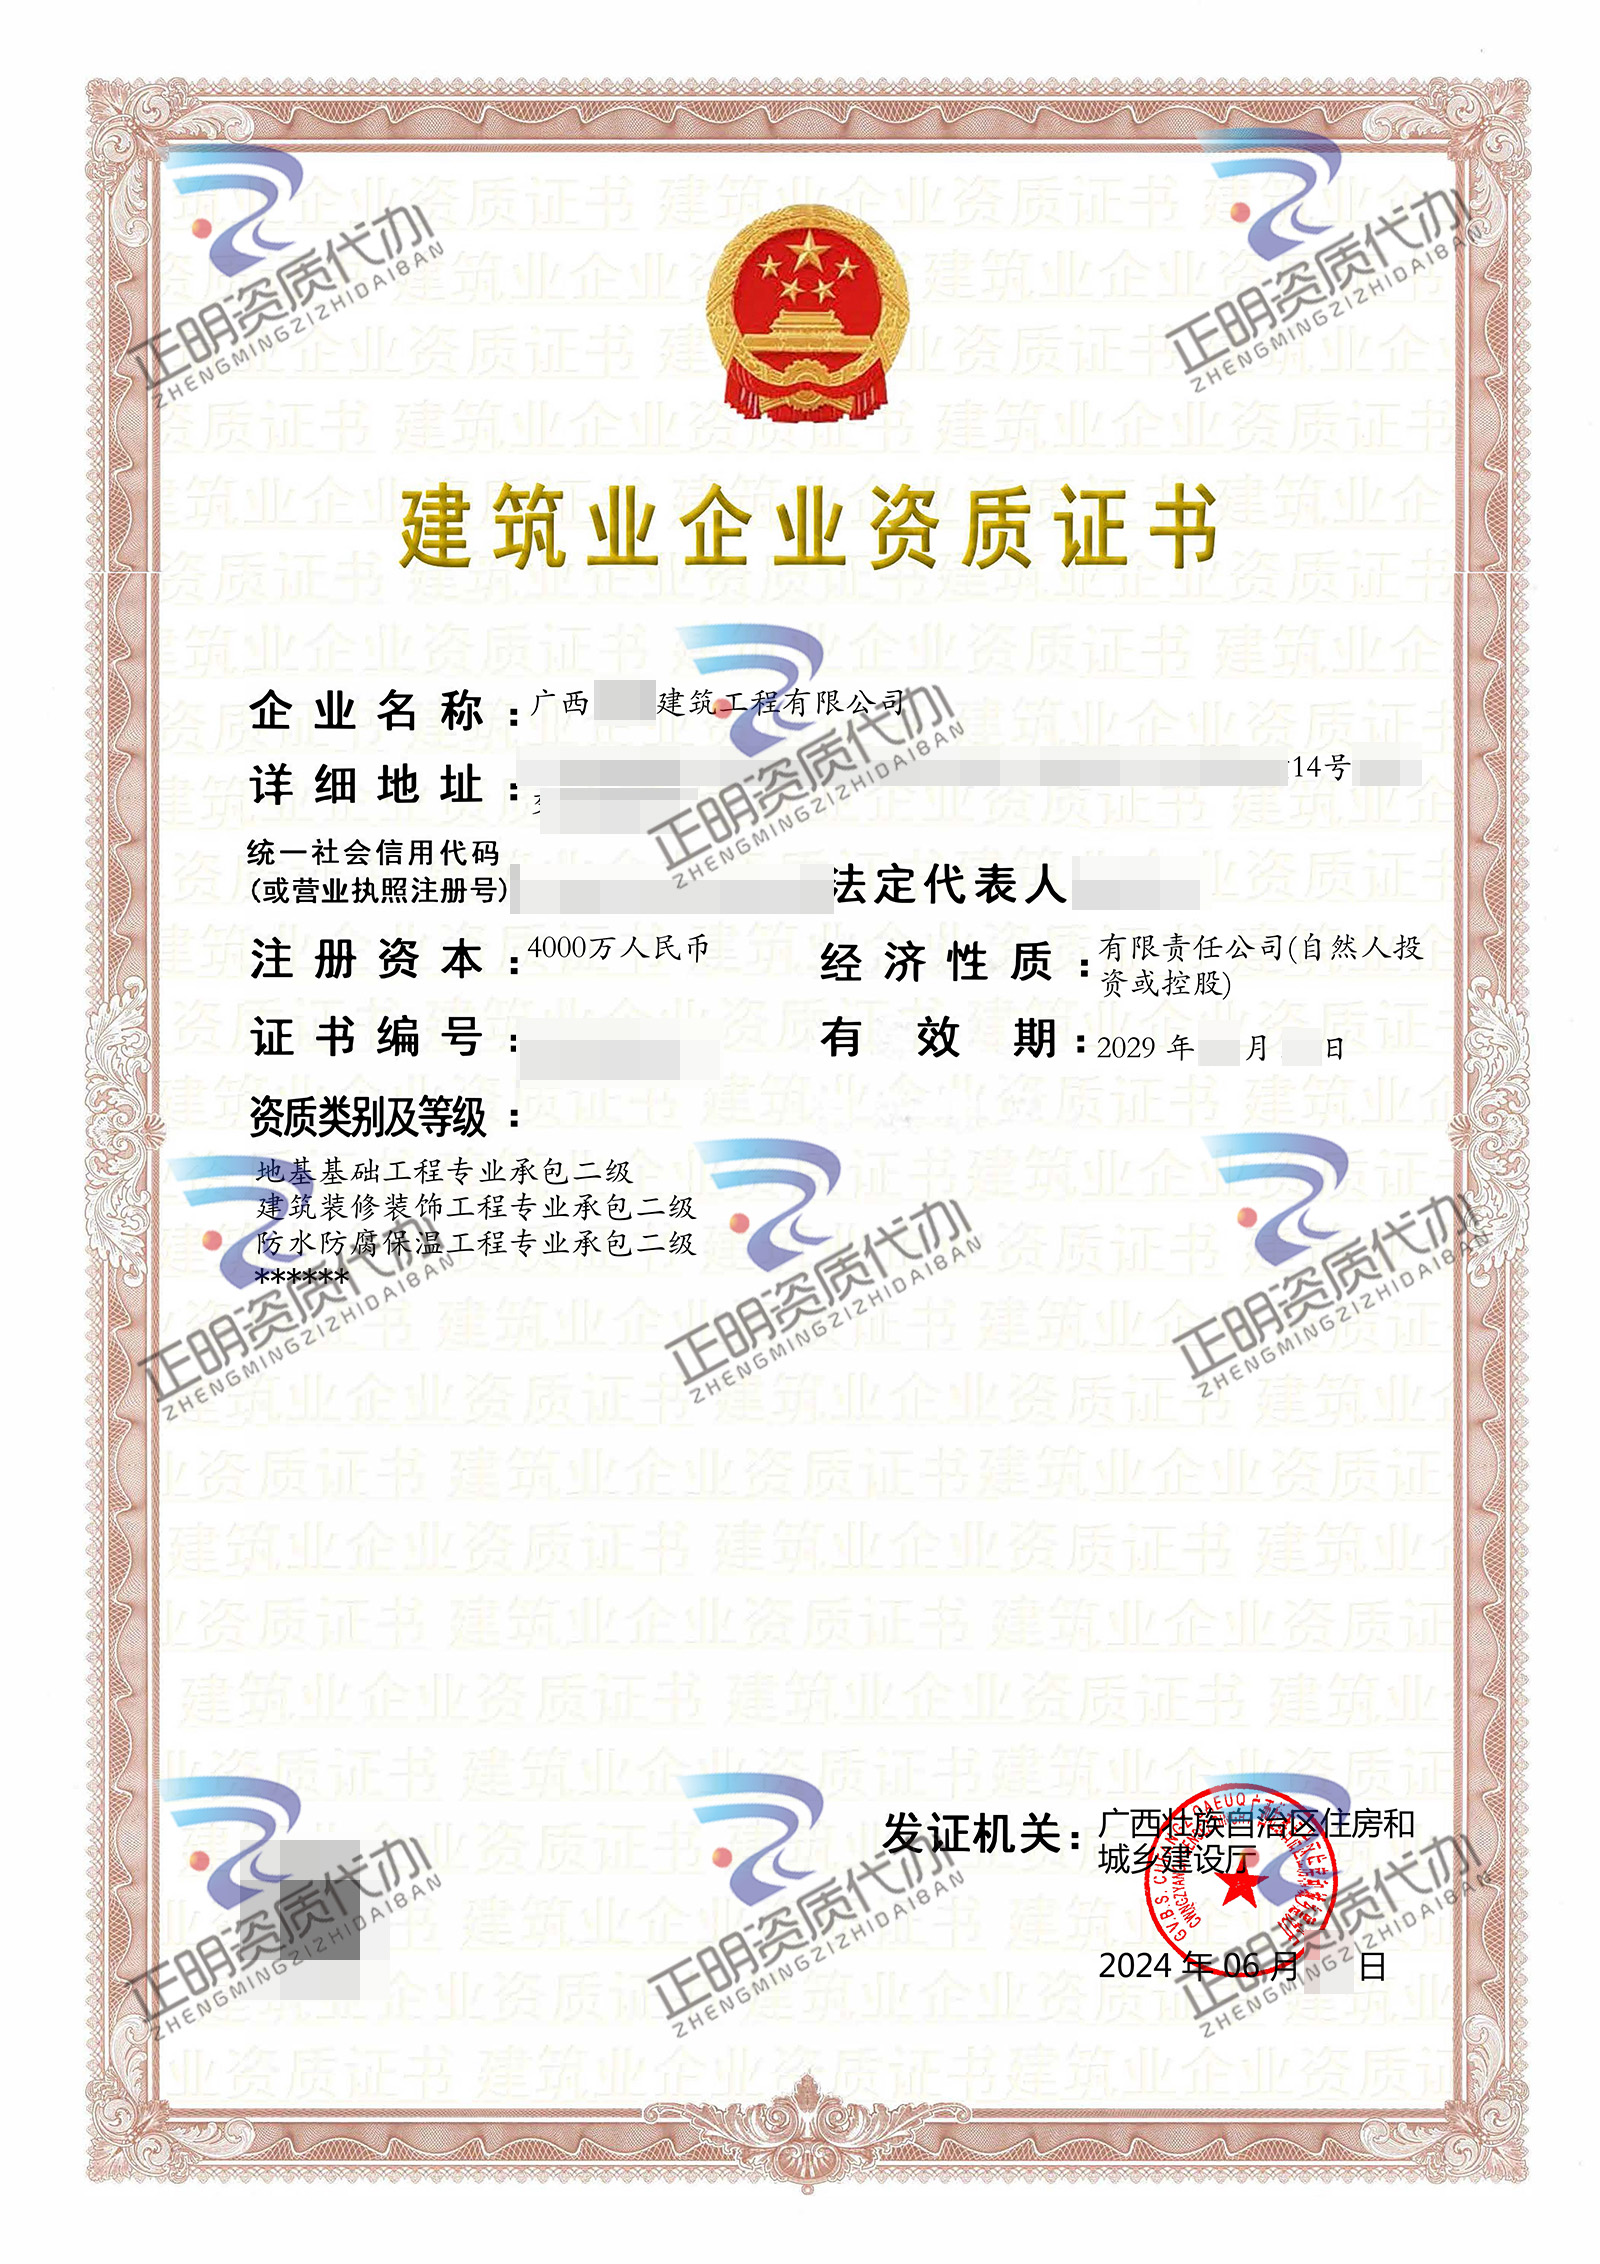 梧州-防水防腐保温工程专业承包二级